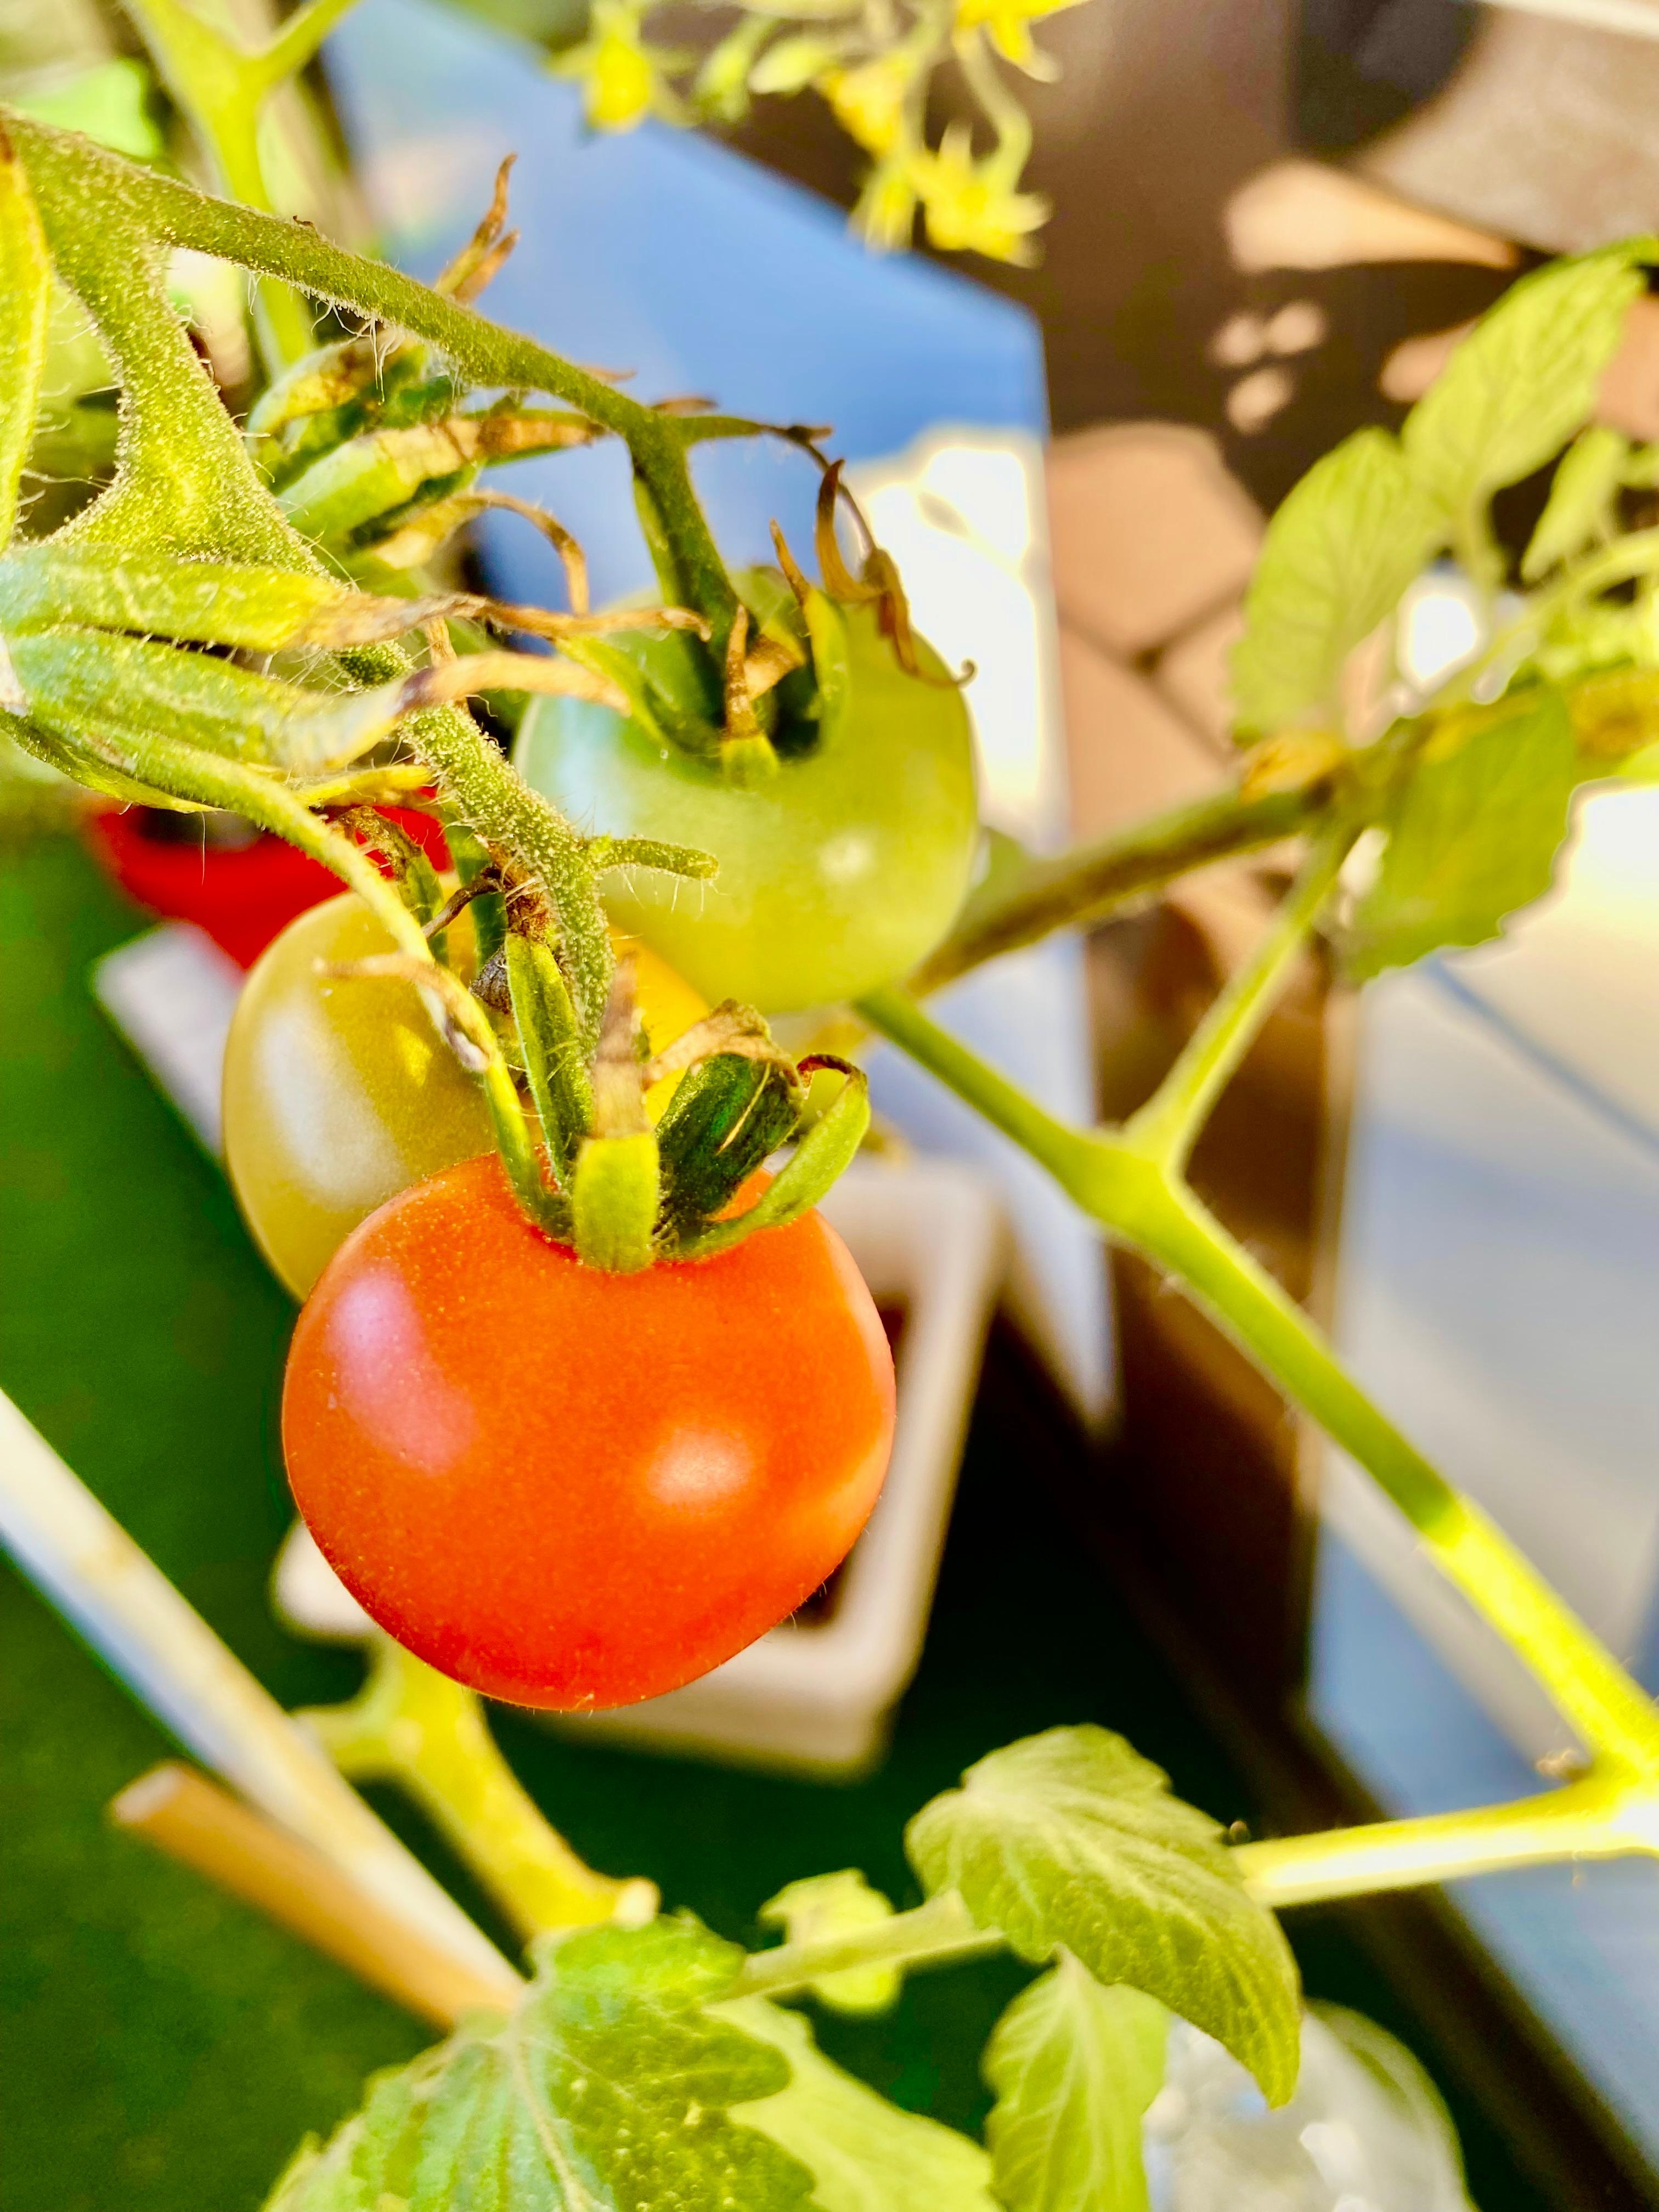 Auf meinem Balkon gibt es noch reichlich reife Tomaten 🍅 
#balkon #herbst #sonne #tomaten
